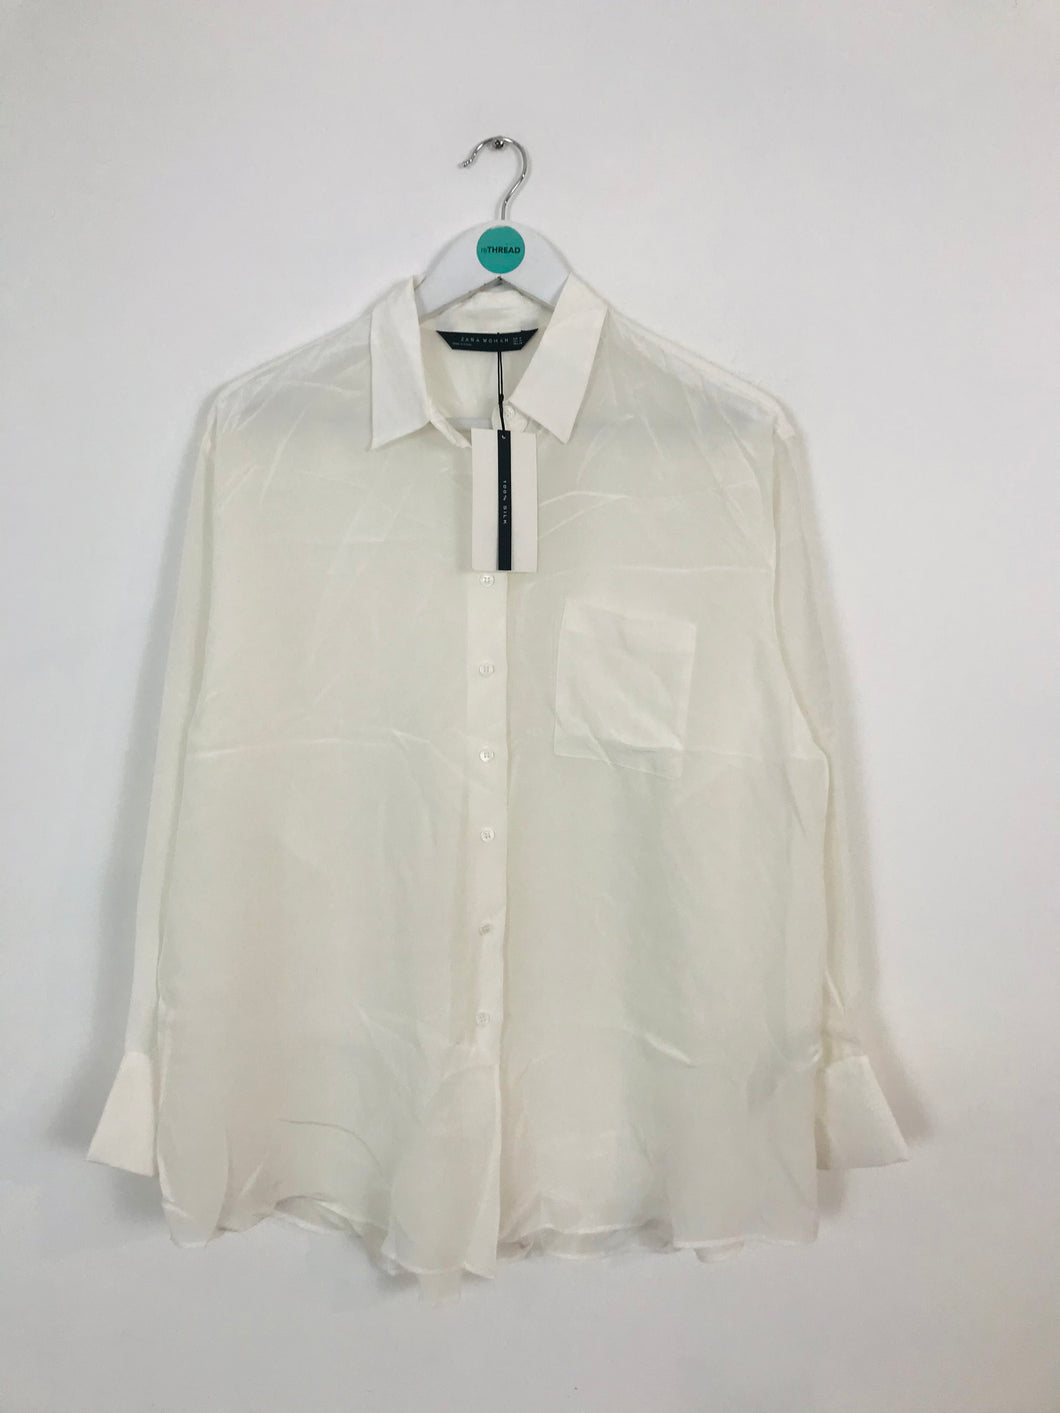 Zara Women’s 100% Silk Oversized Shirt NWT | M UK10-12 | White